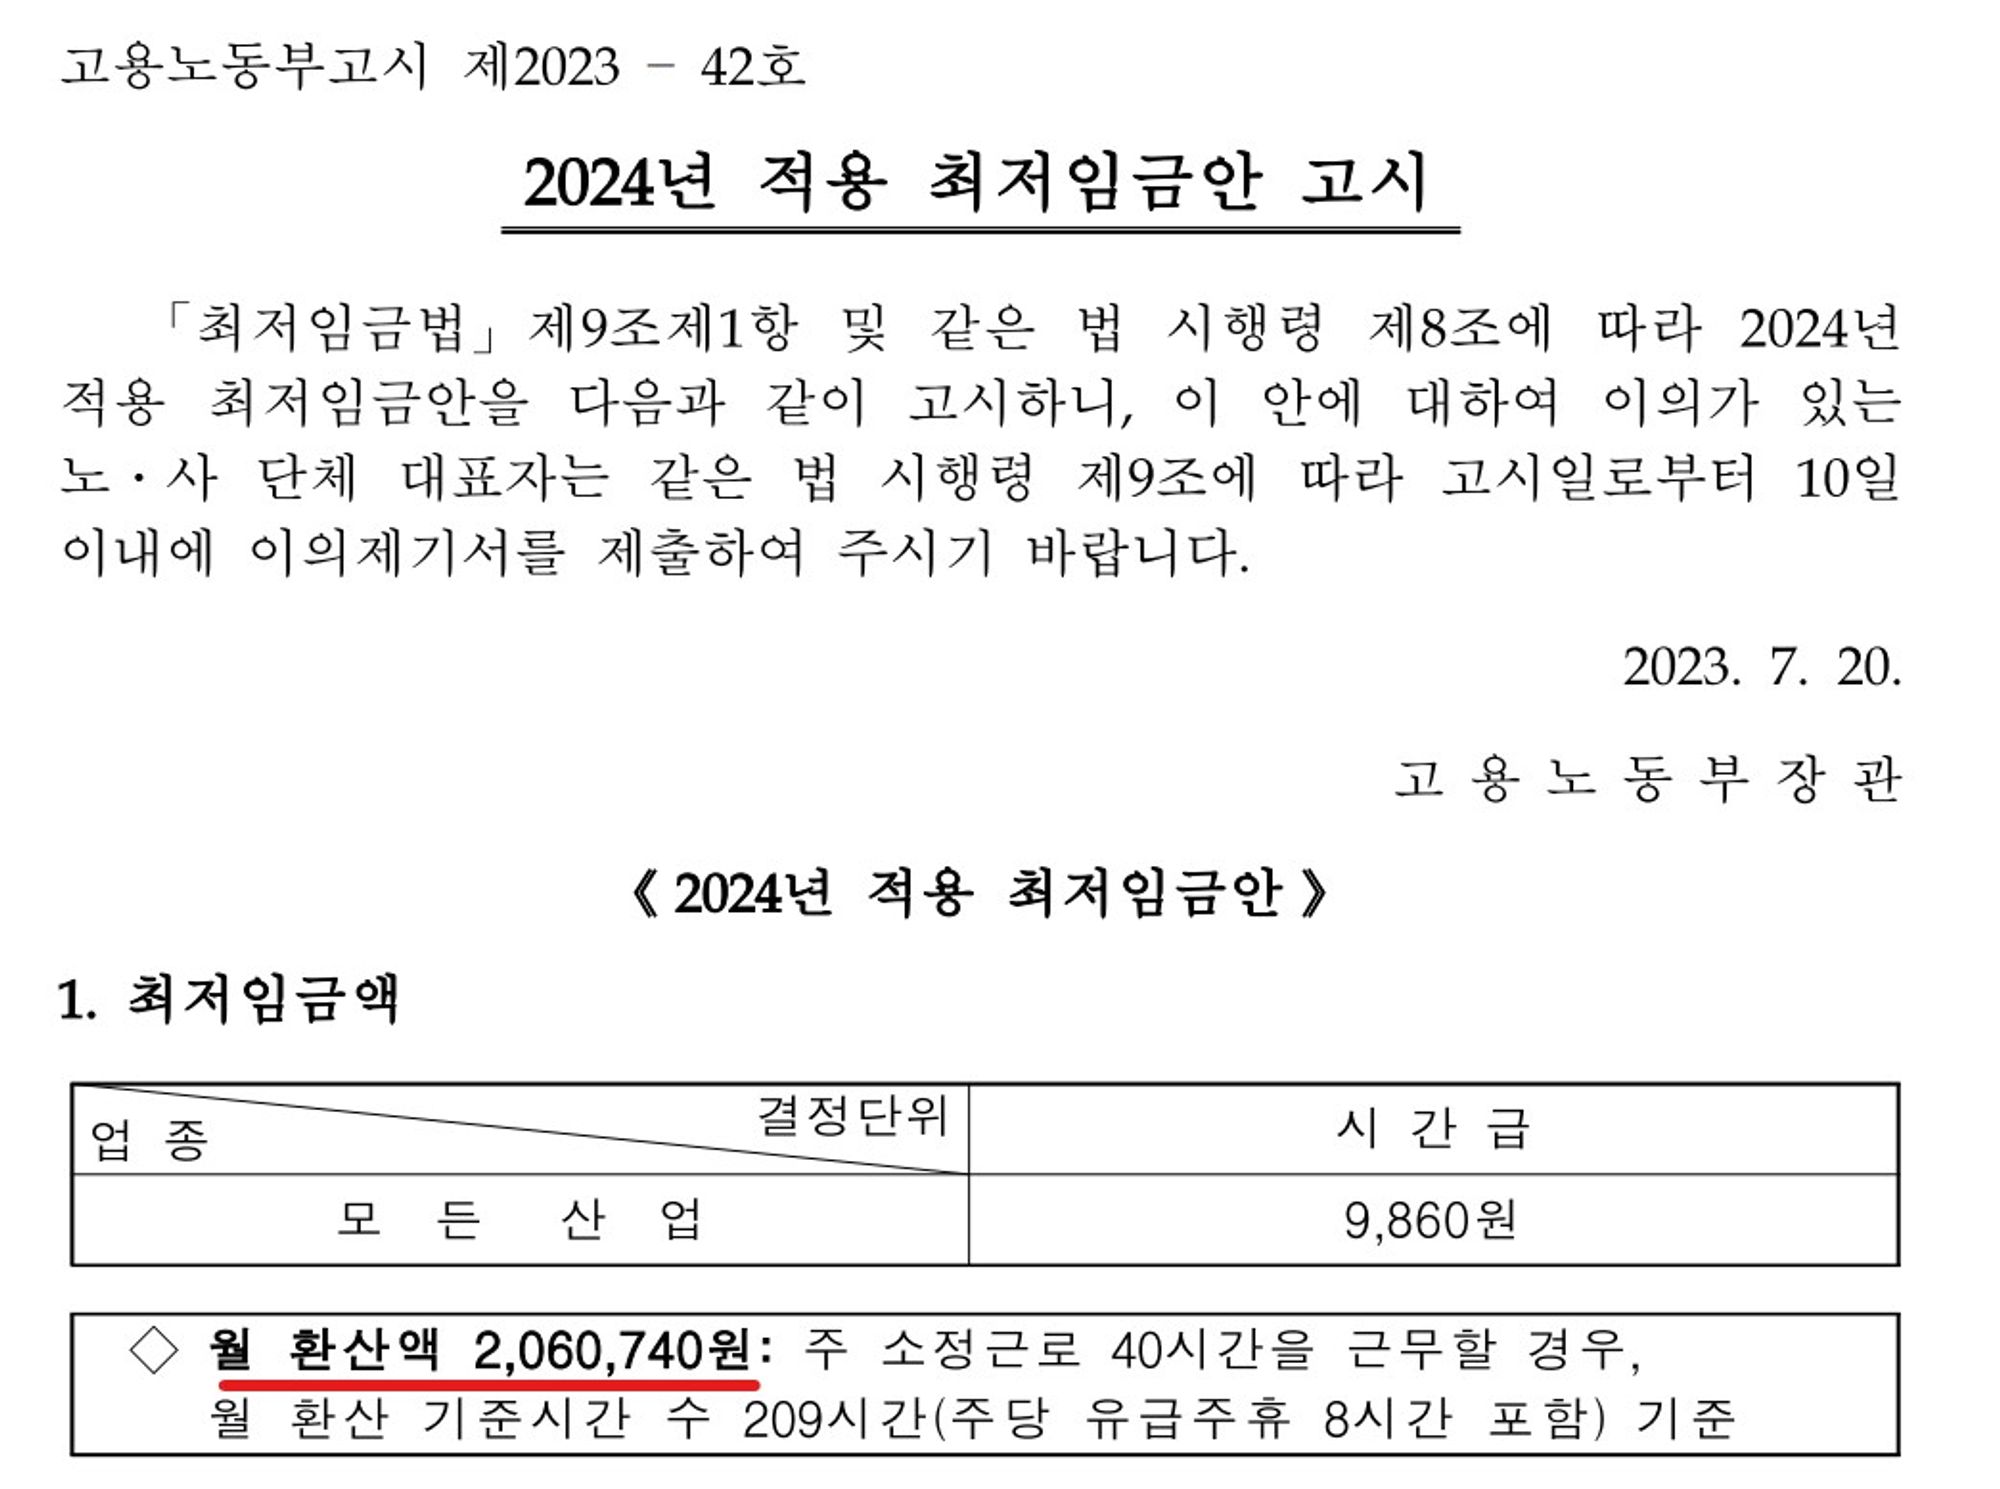 <고용노동부고시 제2023 -42호 / 2024년 최저시급 & 월 환산액>